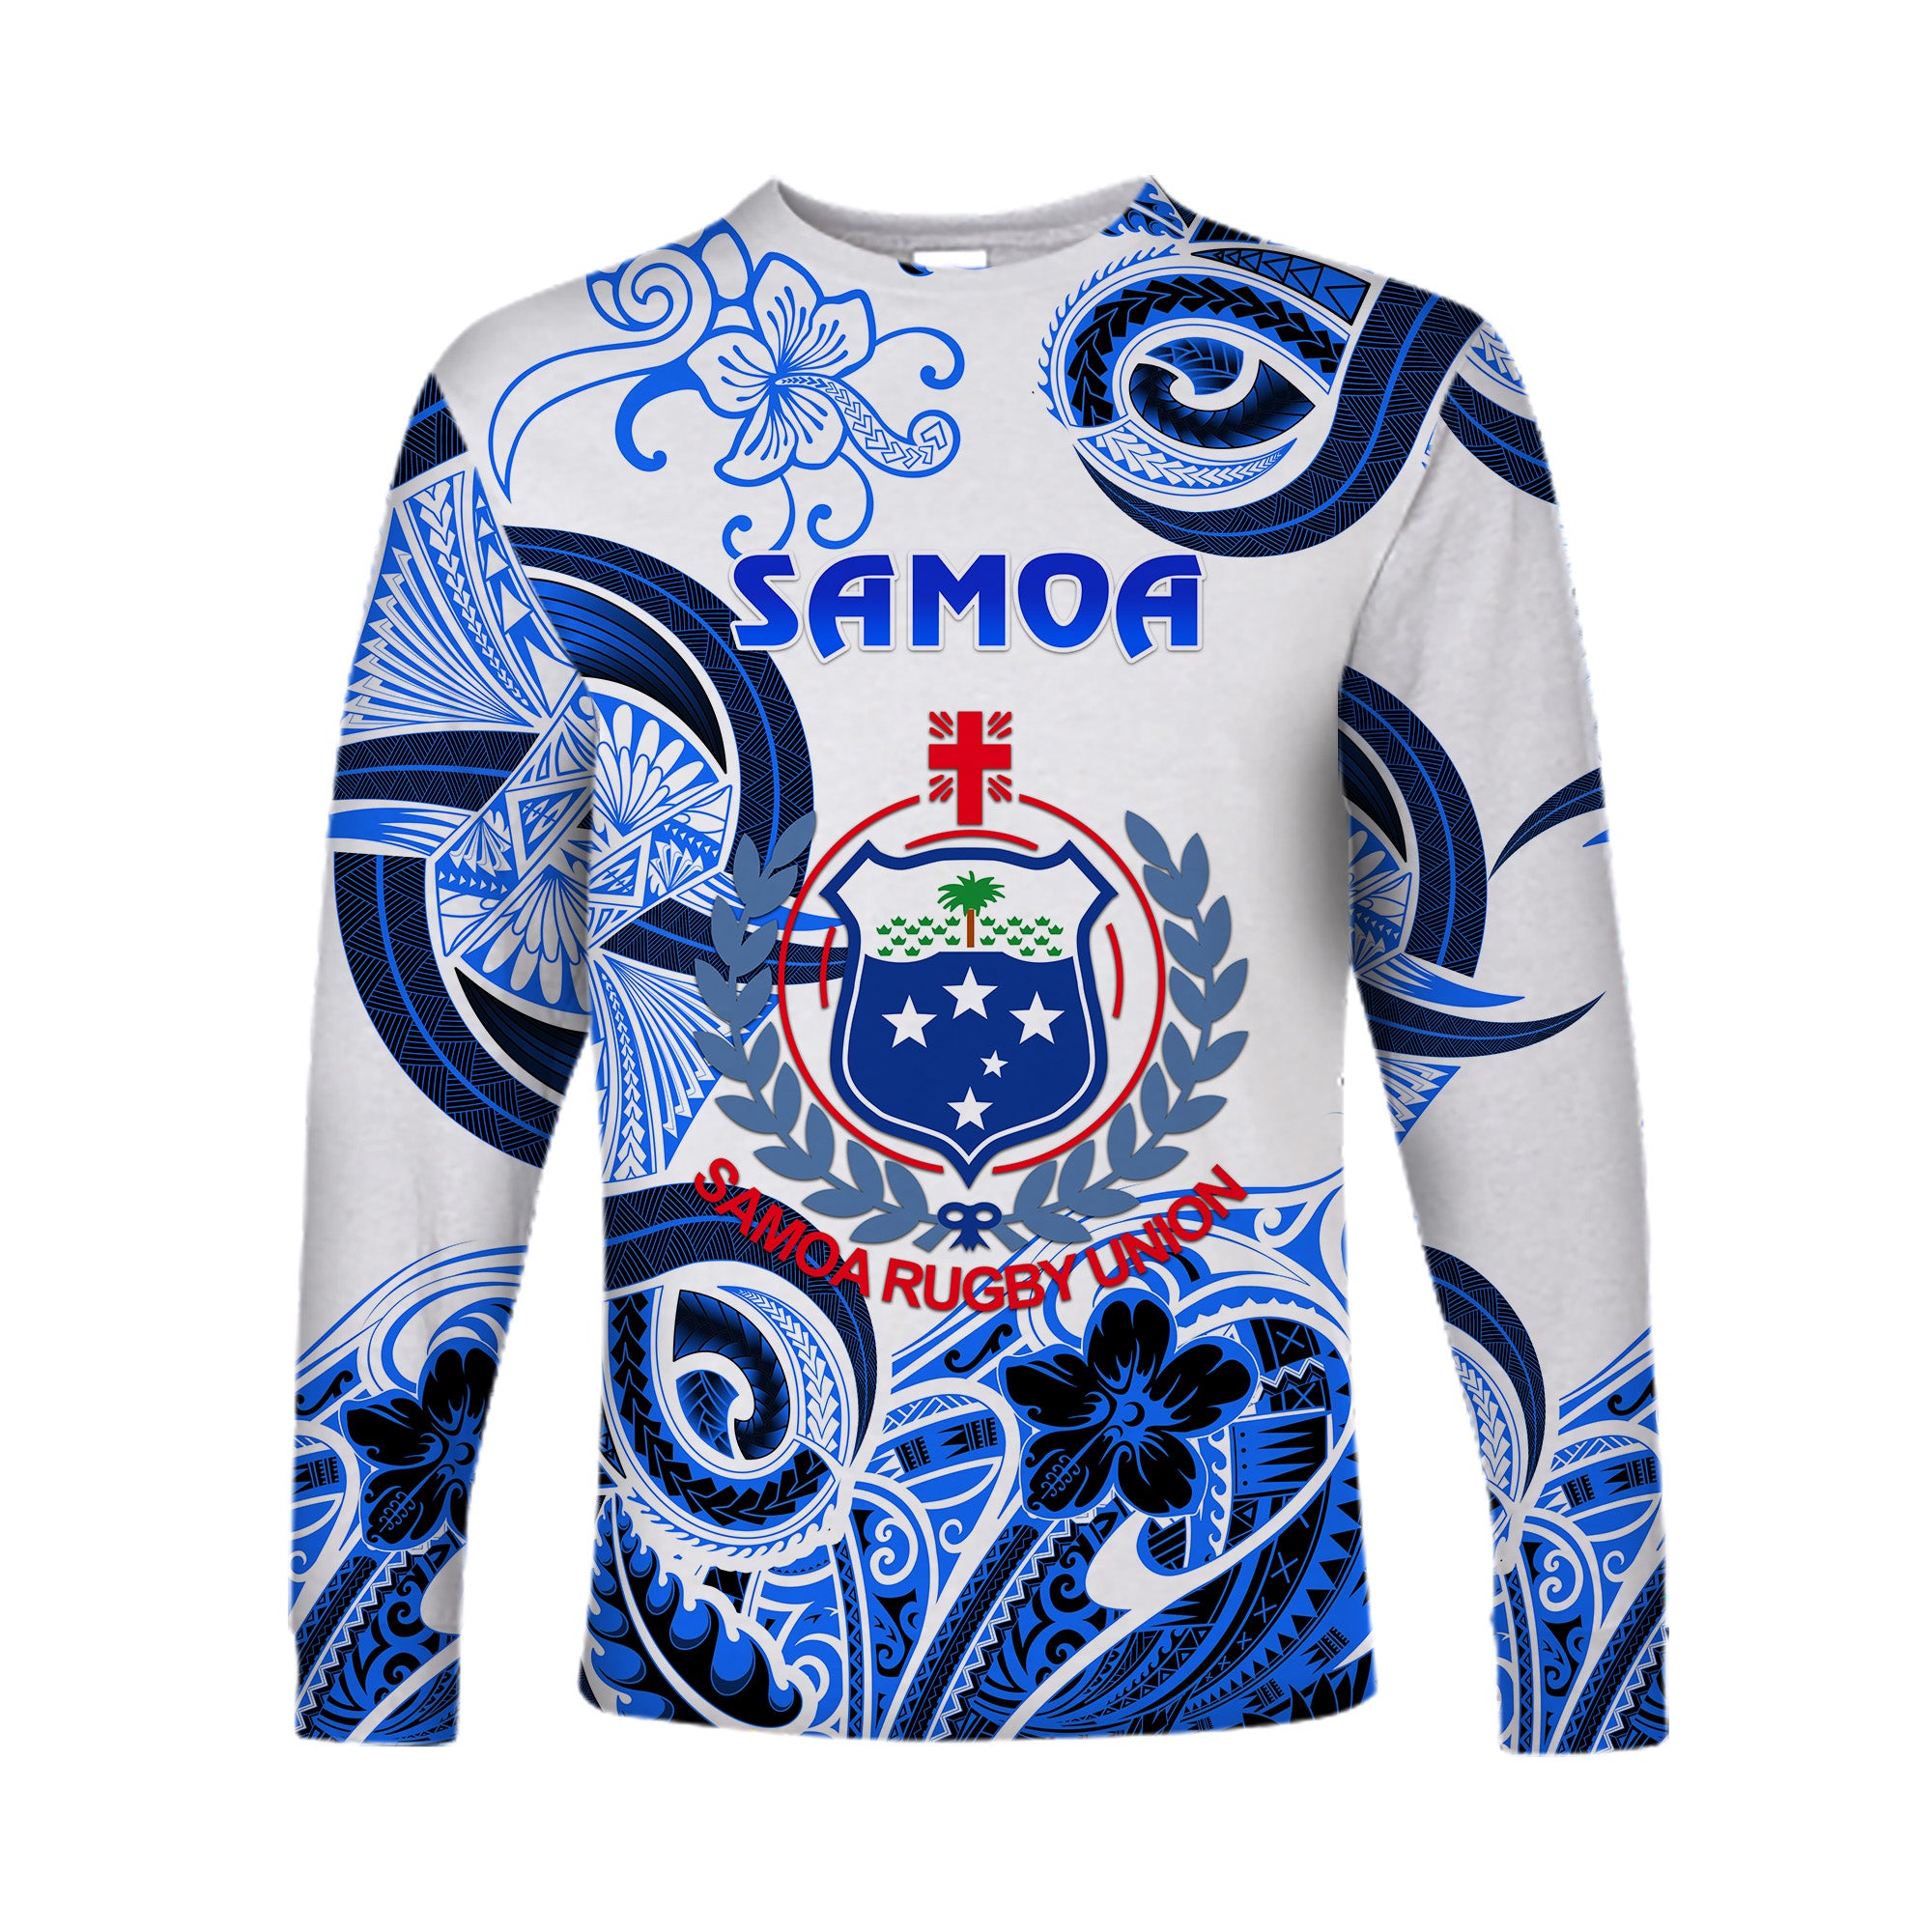 Samoa Manu Long Sleeve Shirt Rugby Unique Style - White LT8 Unisex Blue - Polynesian Pride